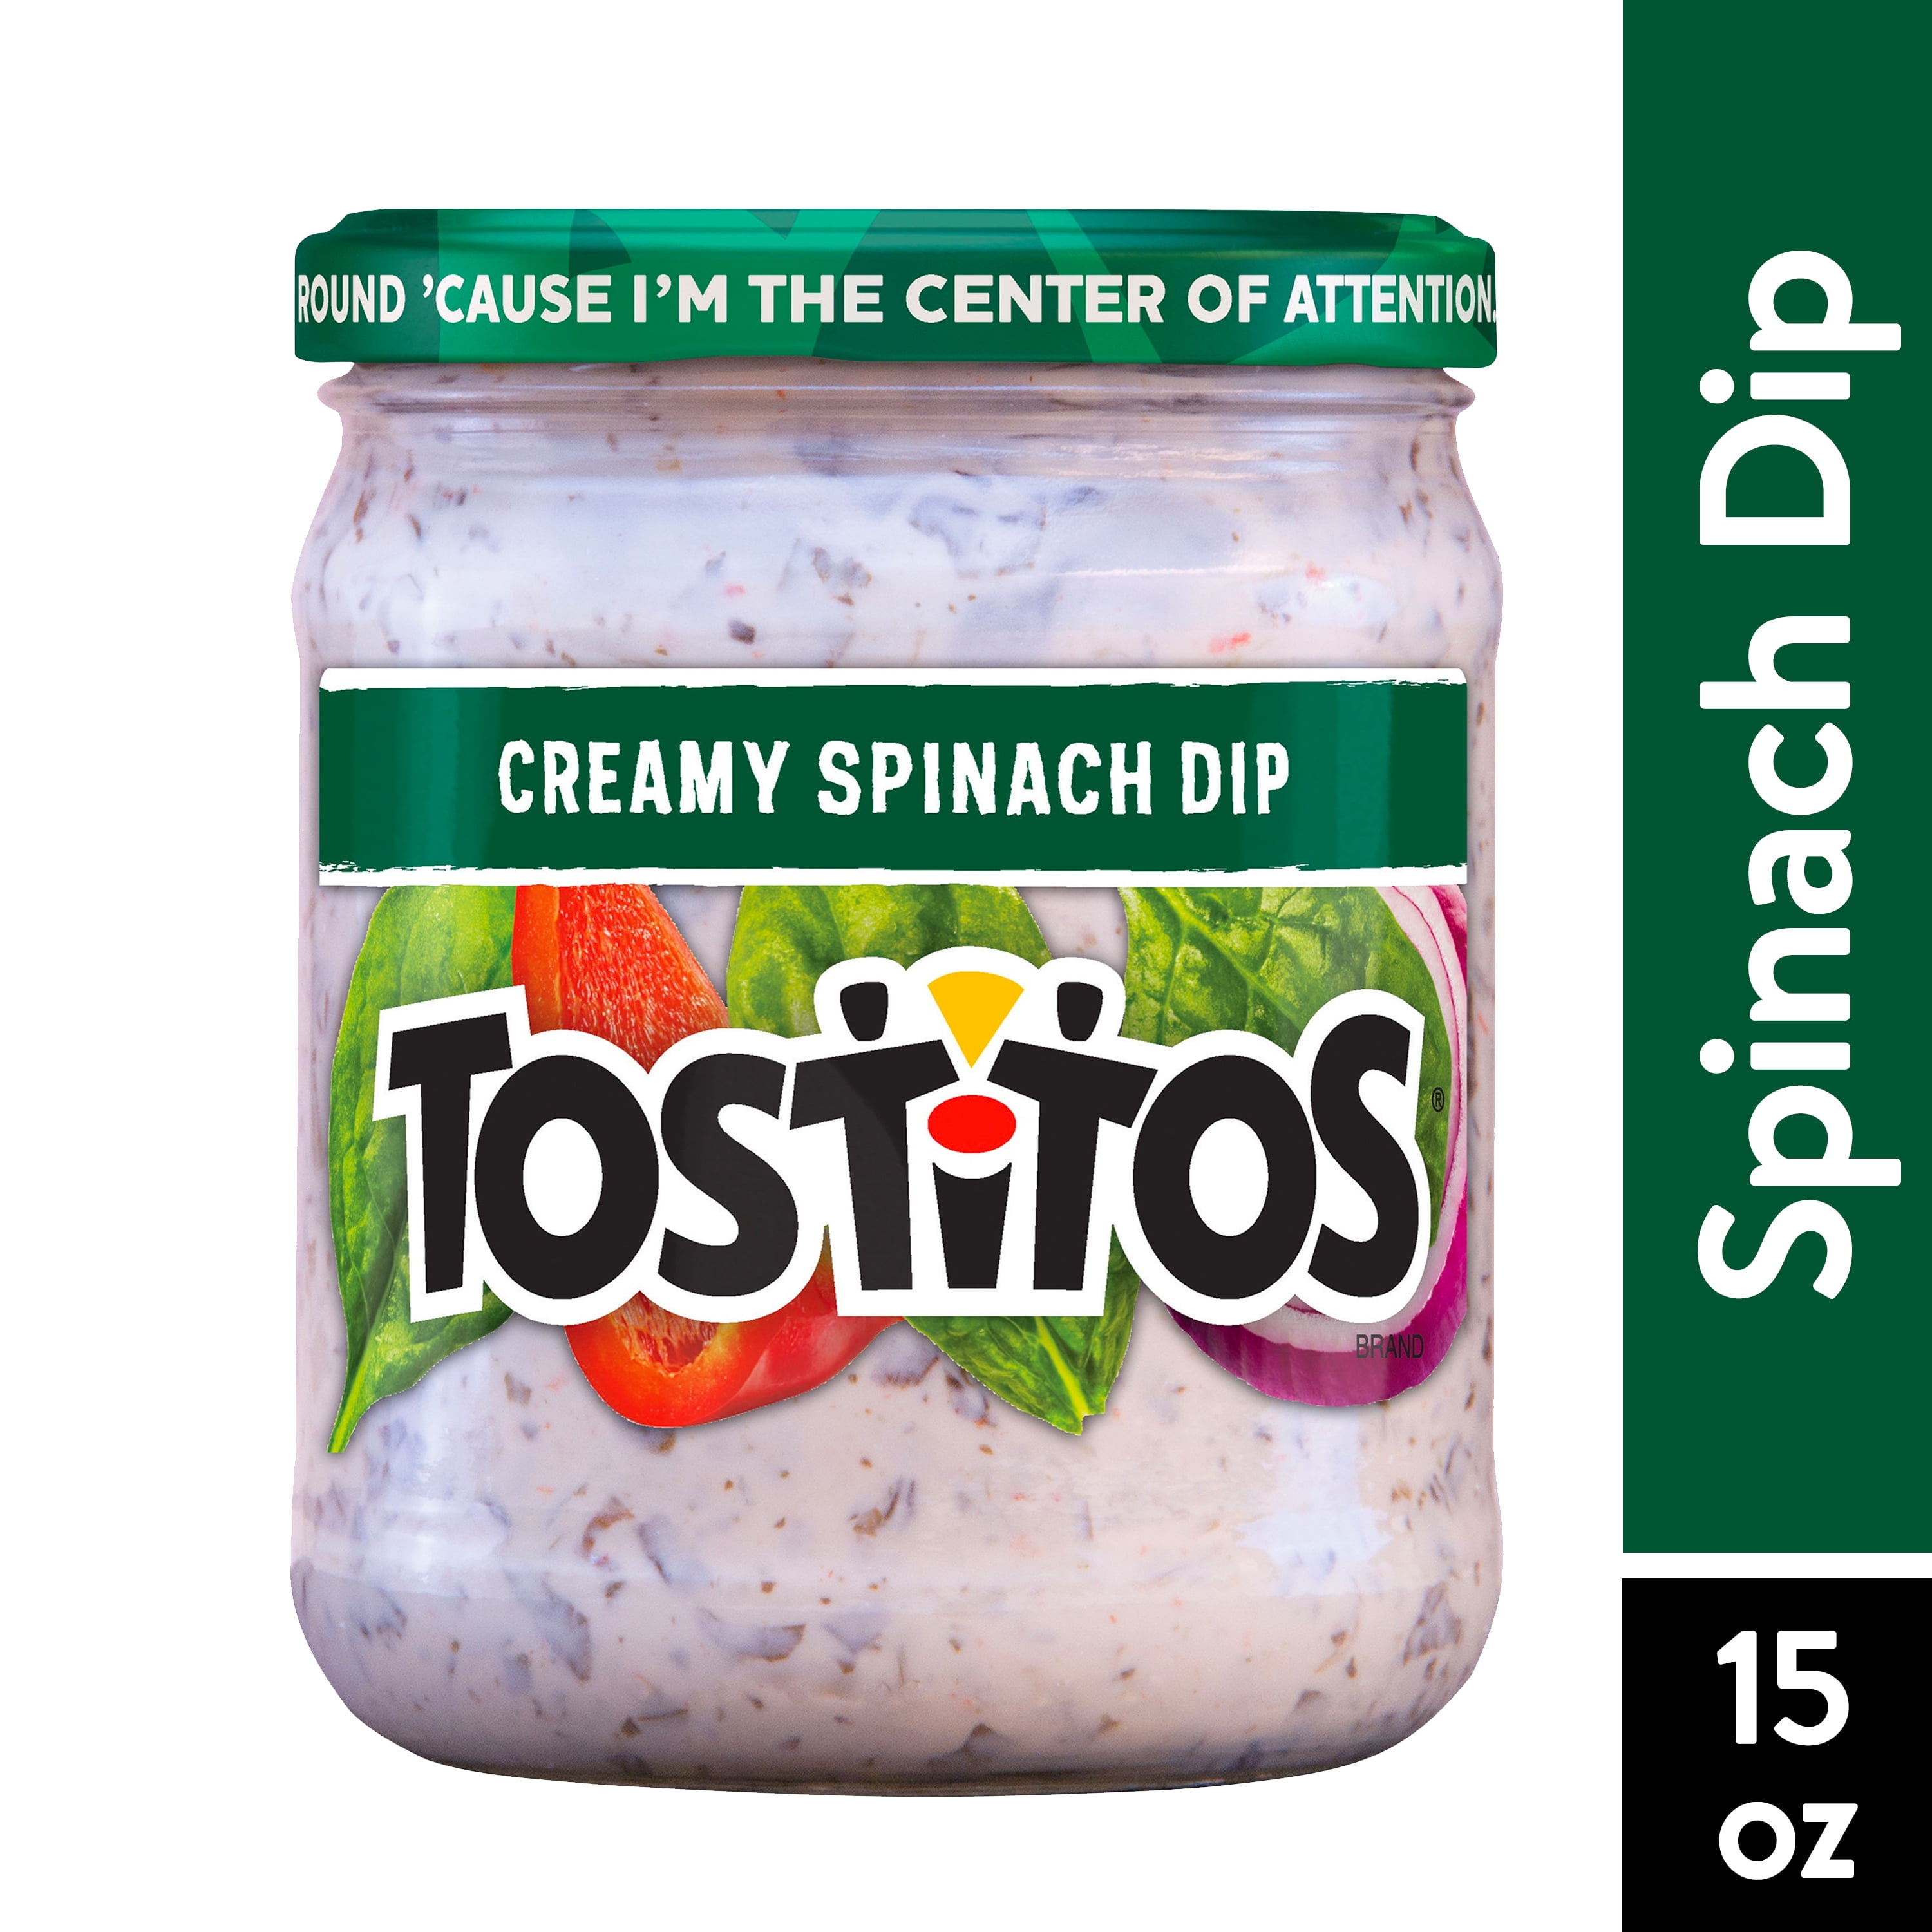 Tostitos Creamy Spinach Dip, Delicious, 15 oz